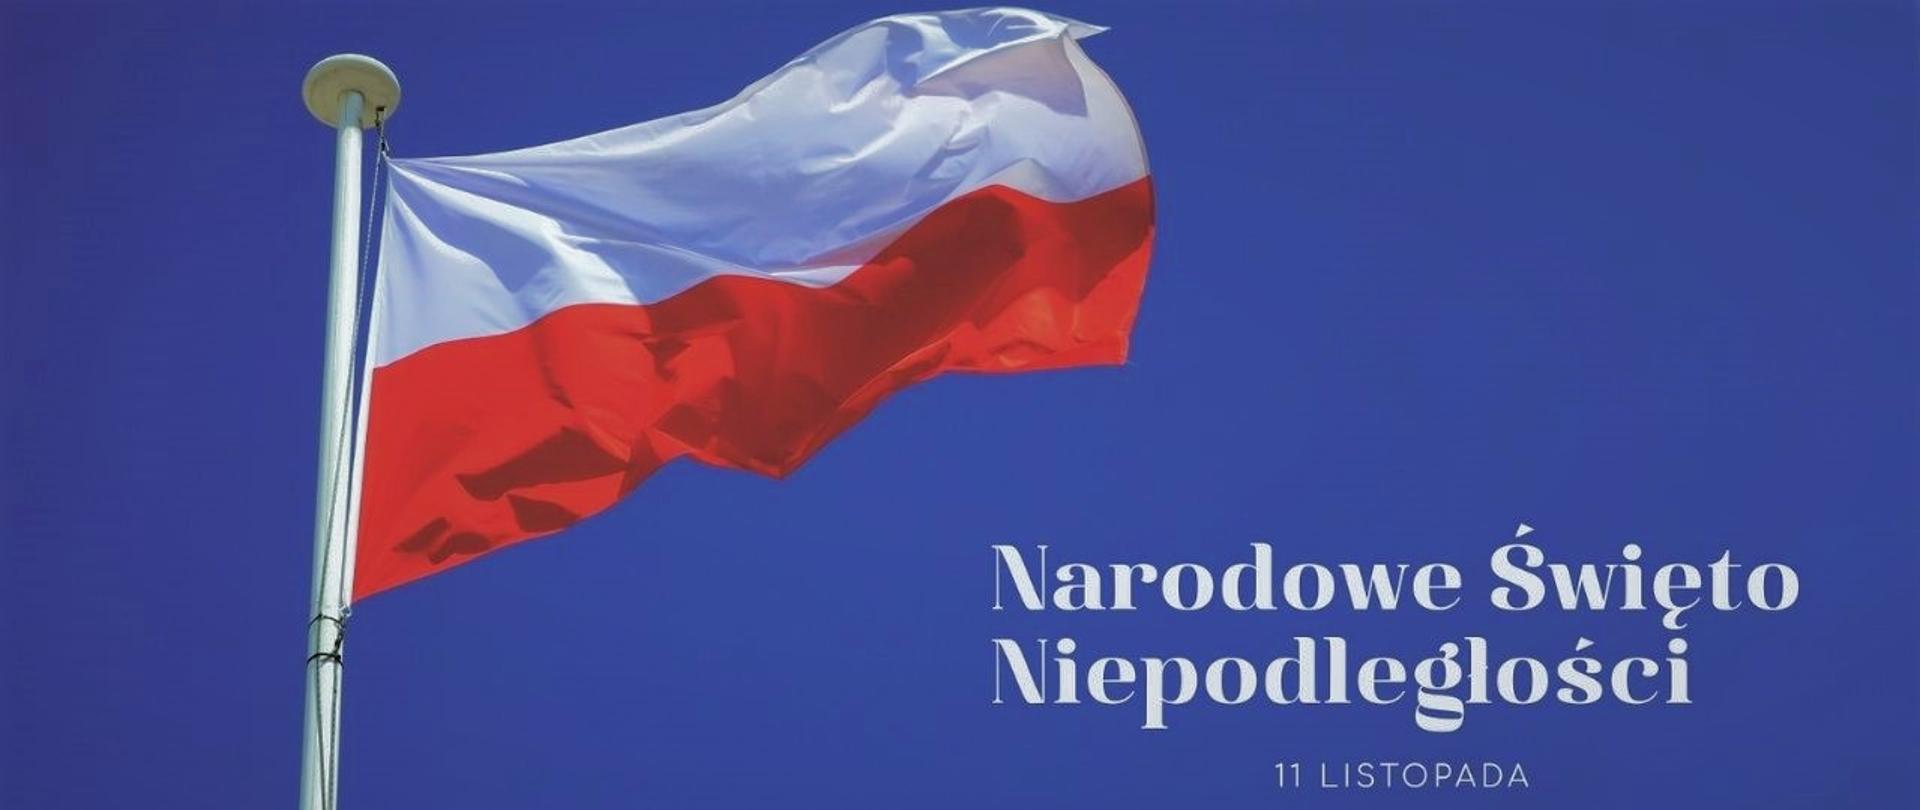 Zdjęcie biało-czerwonej flagi na tle niebieskiego nieba i napis Narodowe Święto Niepodległości 11 listopada.